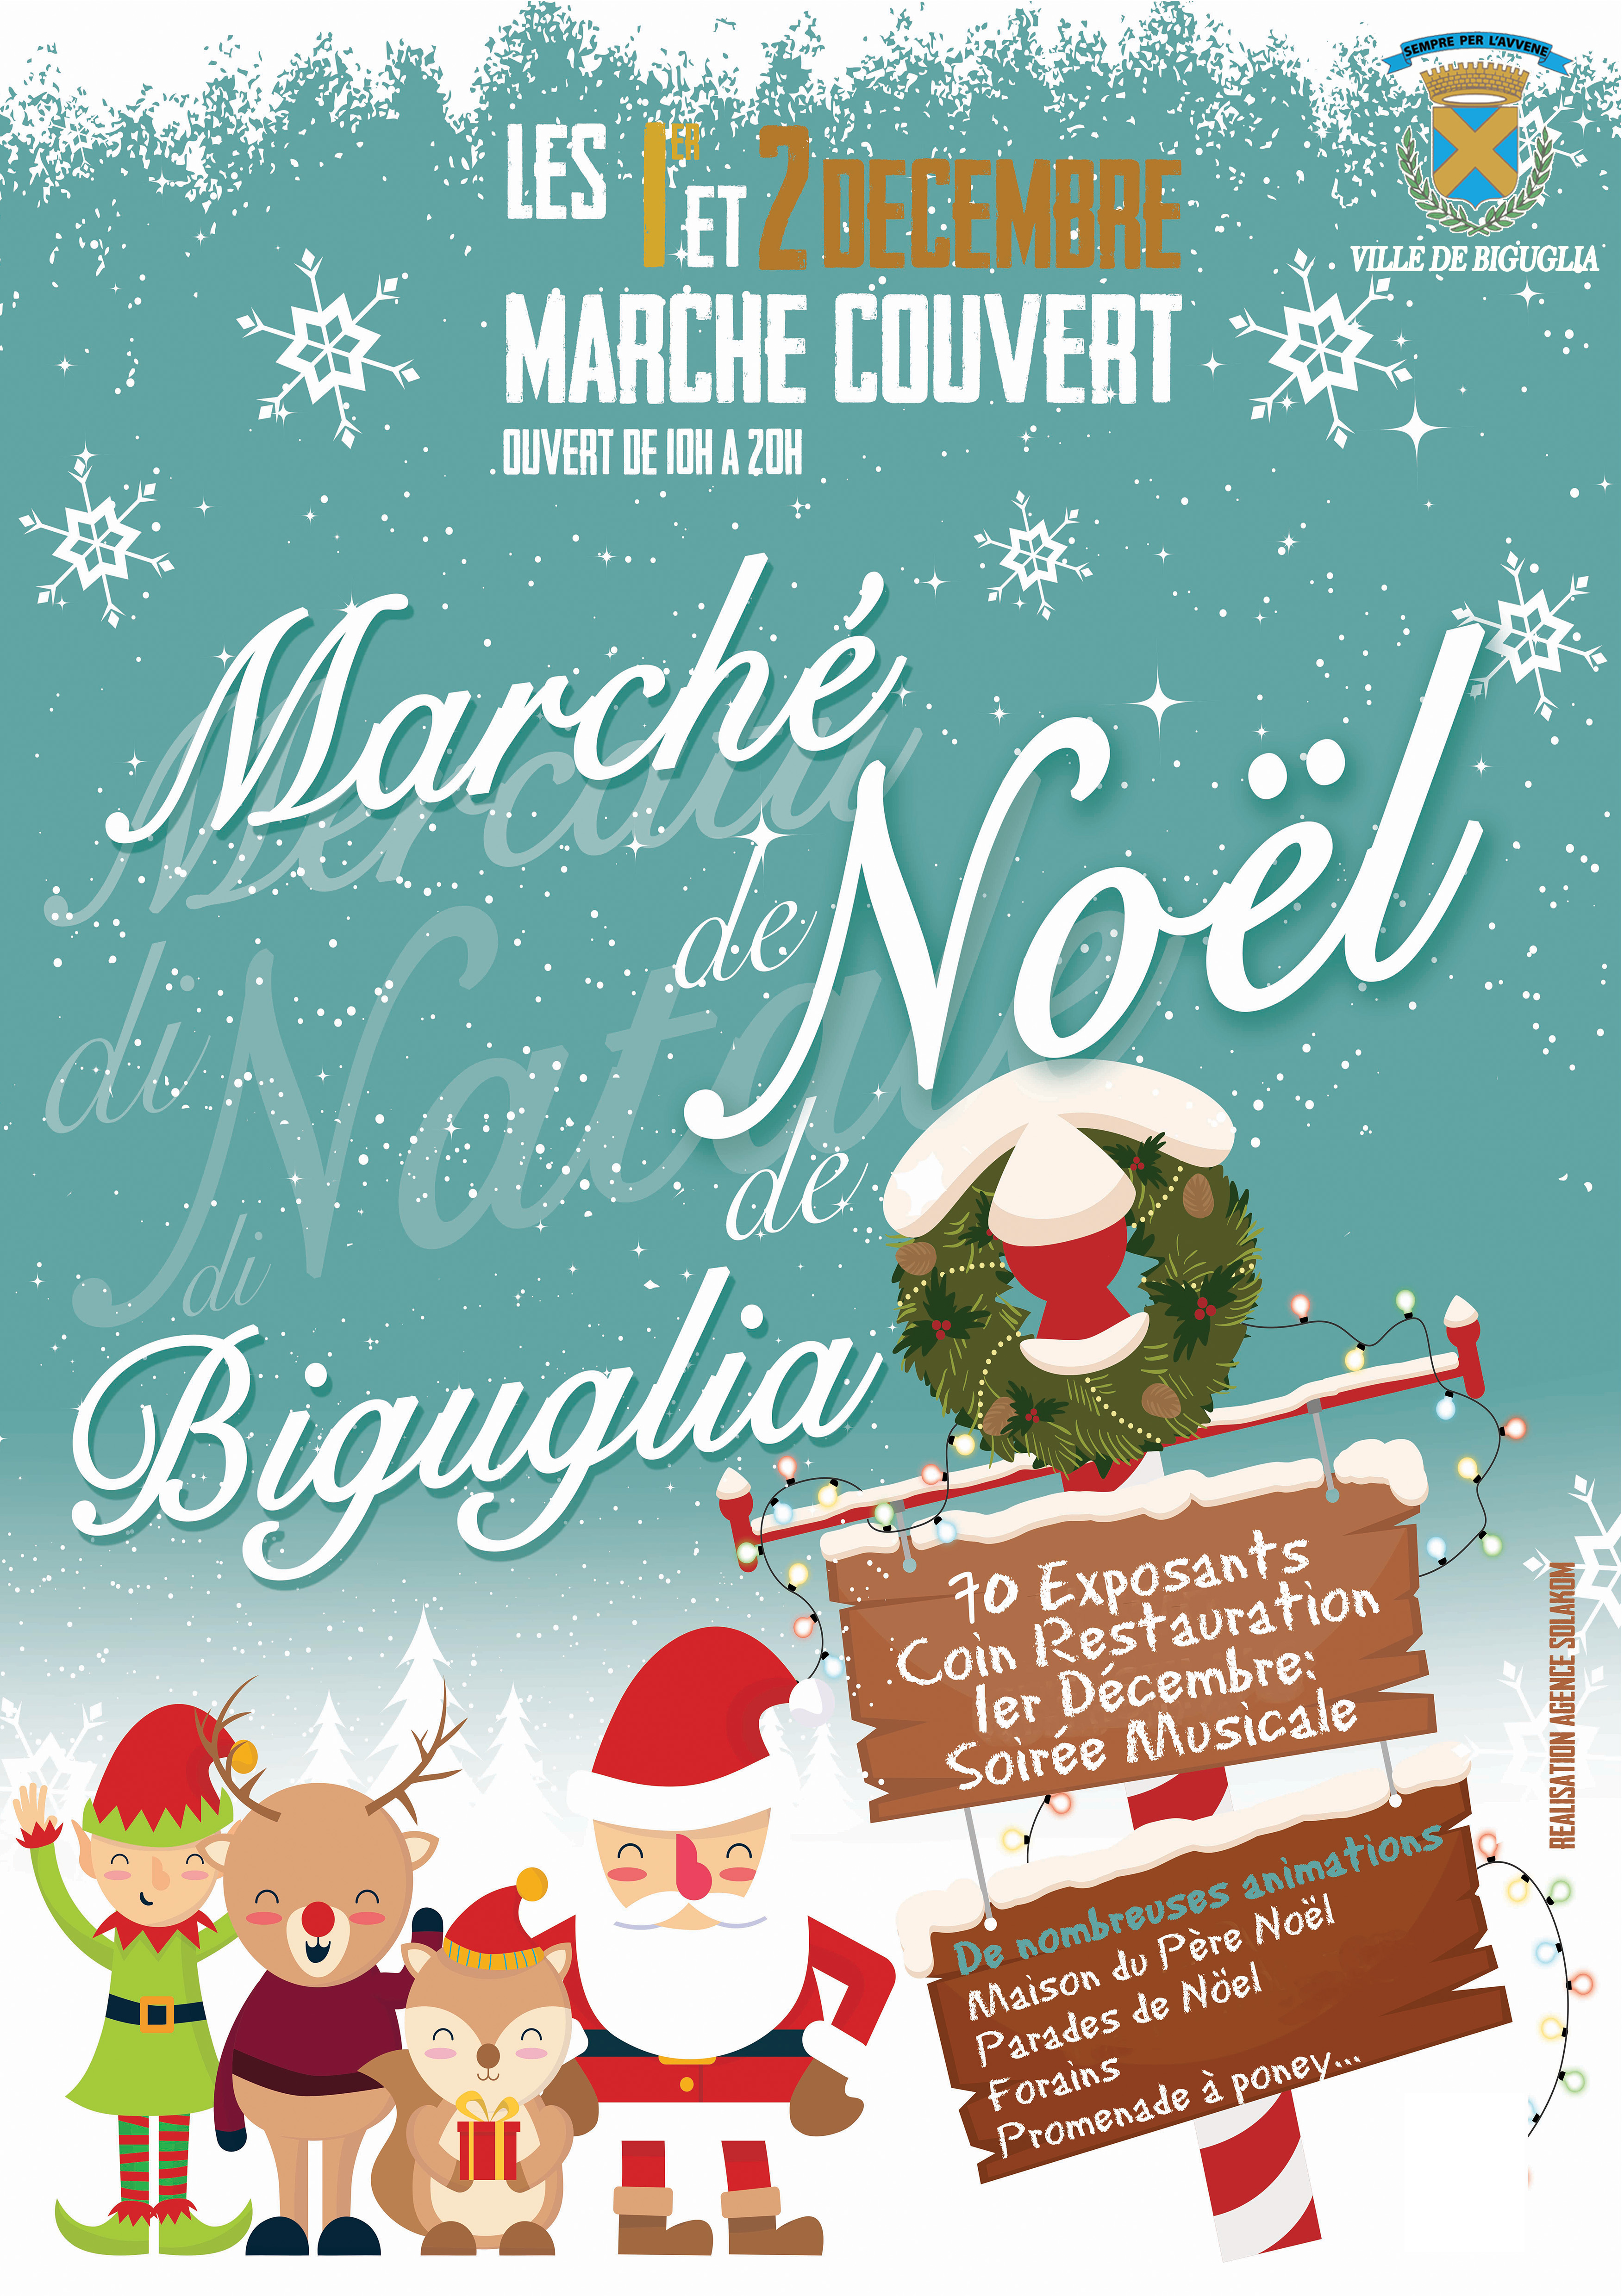 Biguglia : La magie de Noël au marché couvert jusqu’à dimanche soir